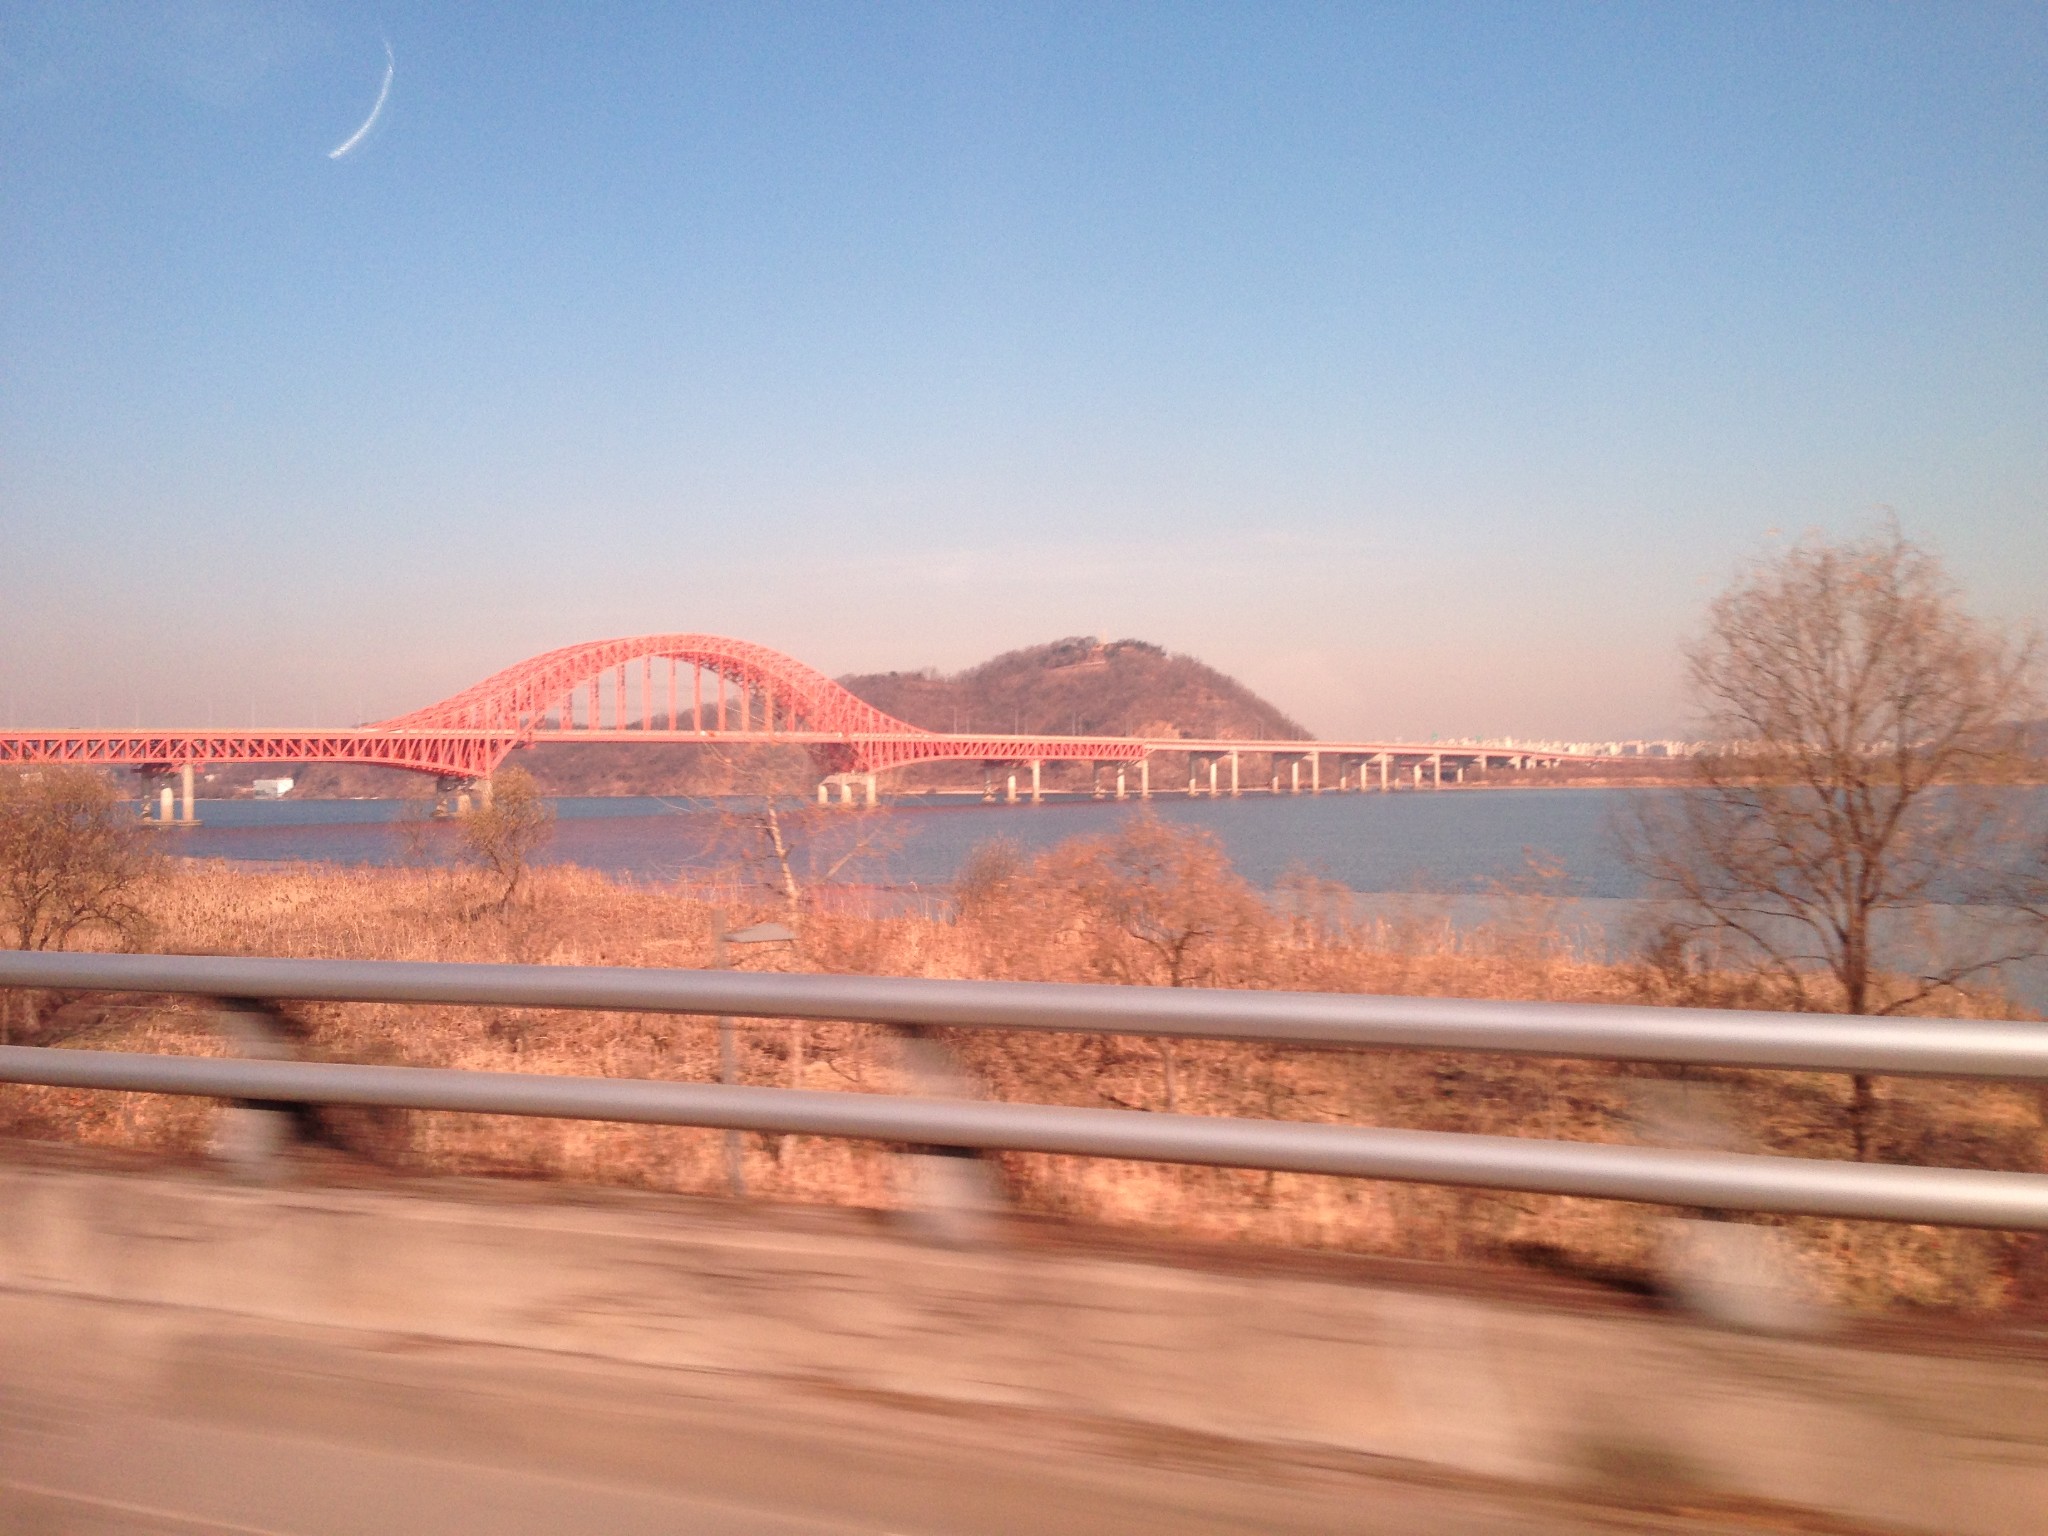 漢江大橋